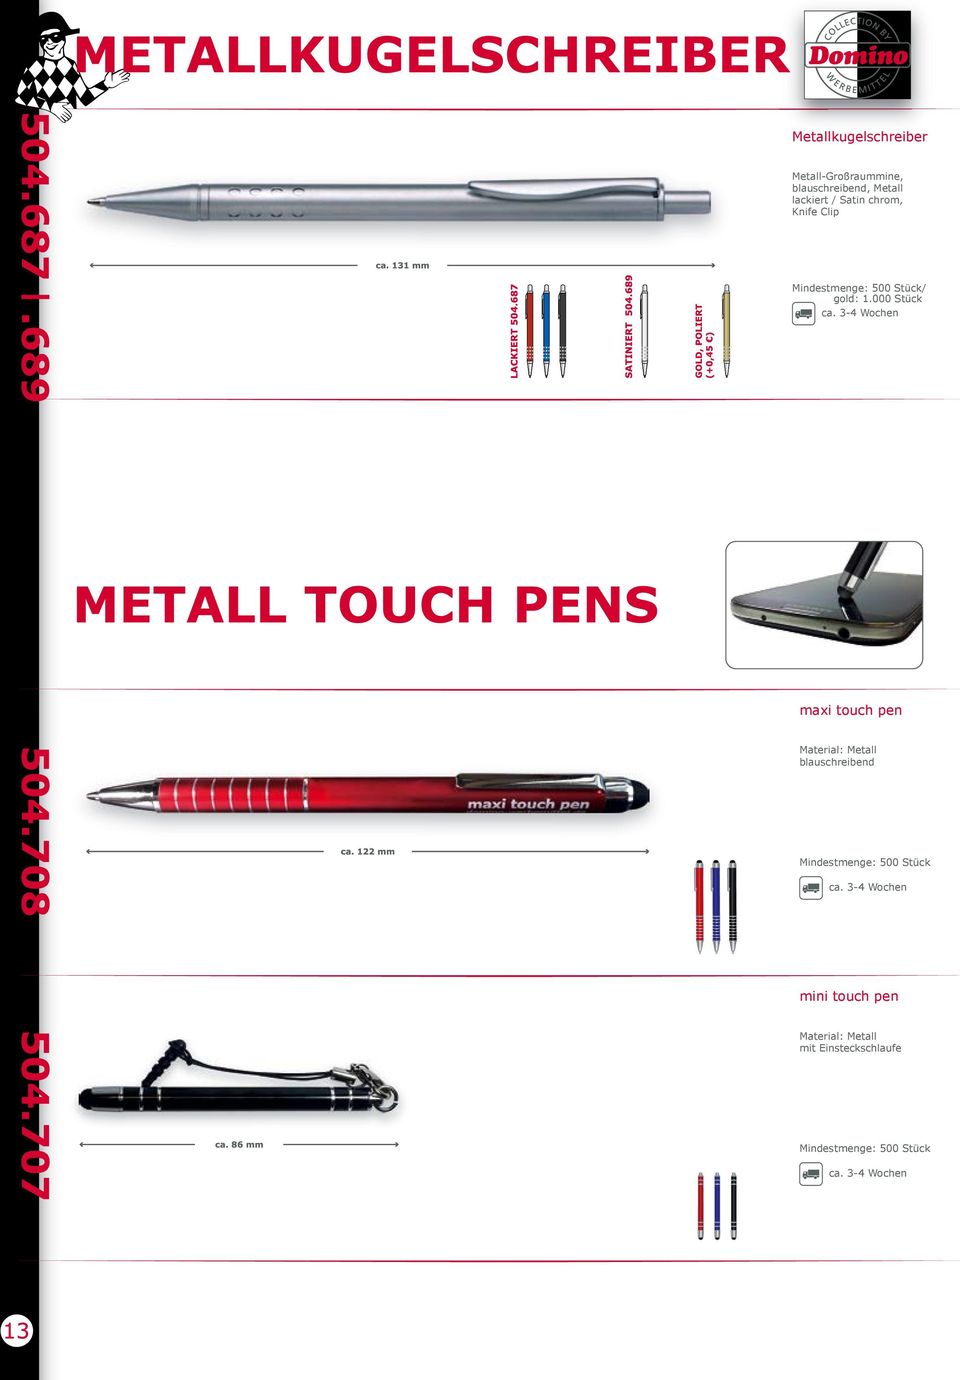 touch pen Material: Metall mit Einsteckschlaufe Mindestmenge: 500 0,57 * Gravur auf Schaft, 0,20 *Alle Preise sind Beispielpreise